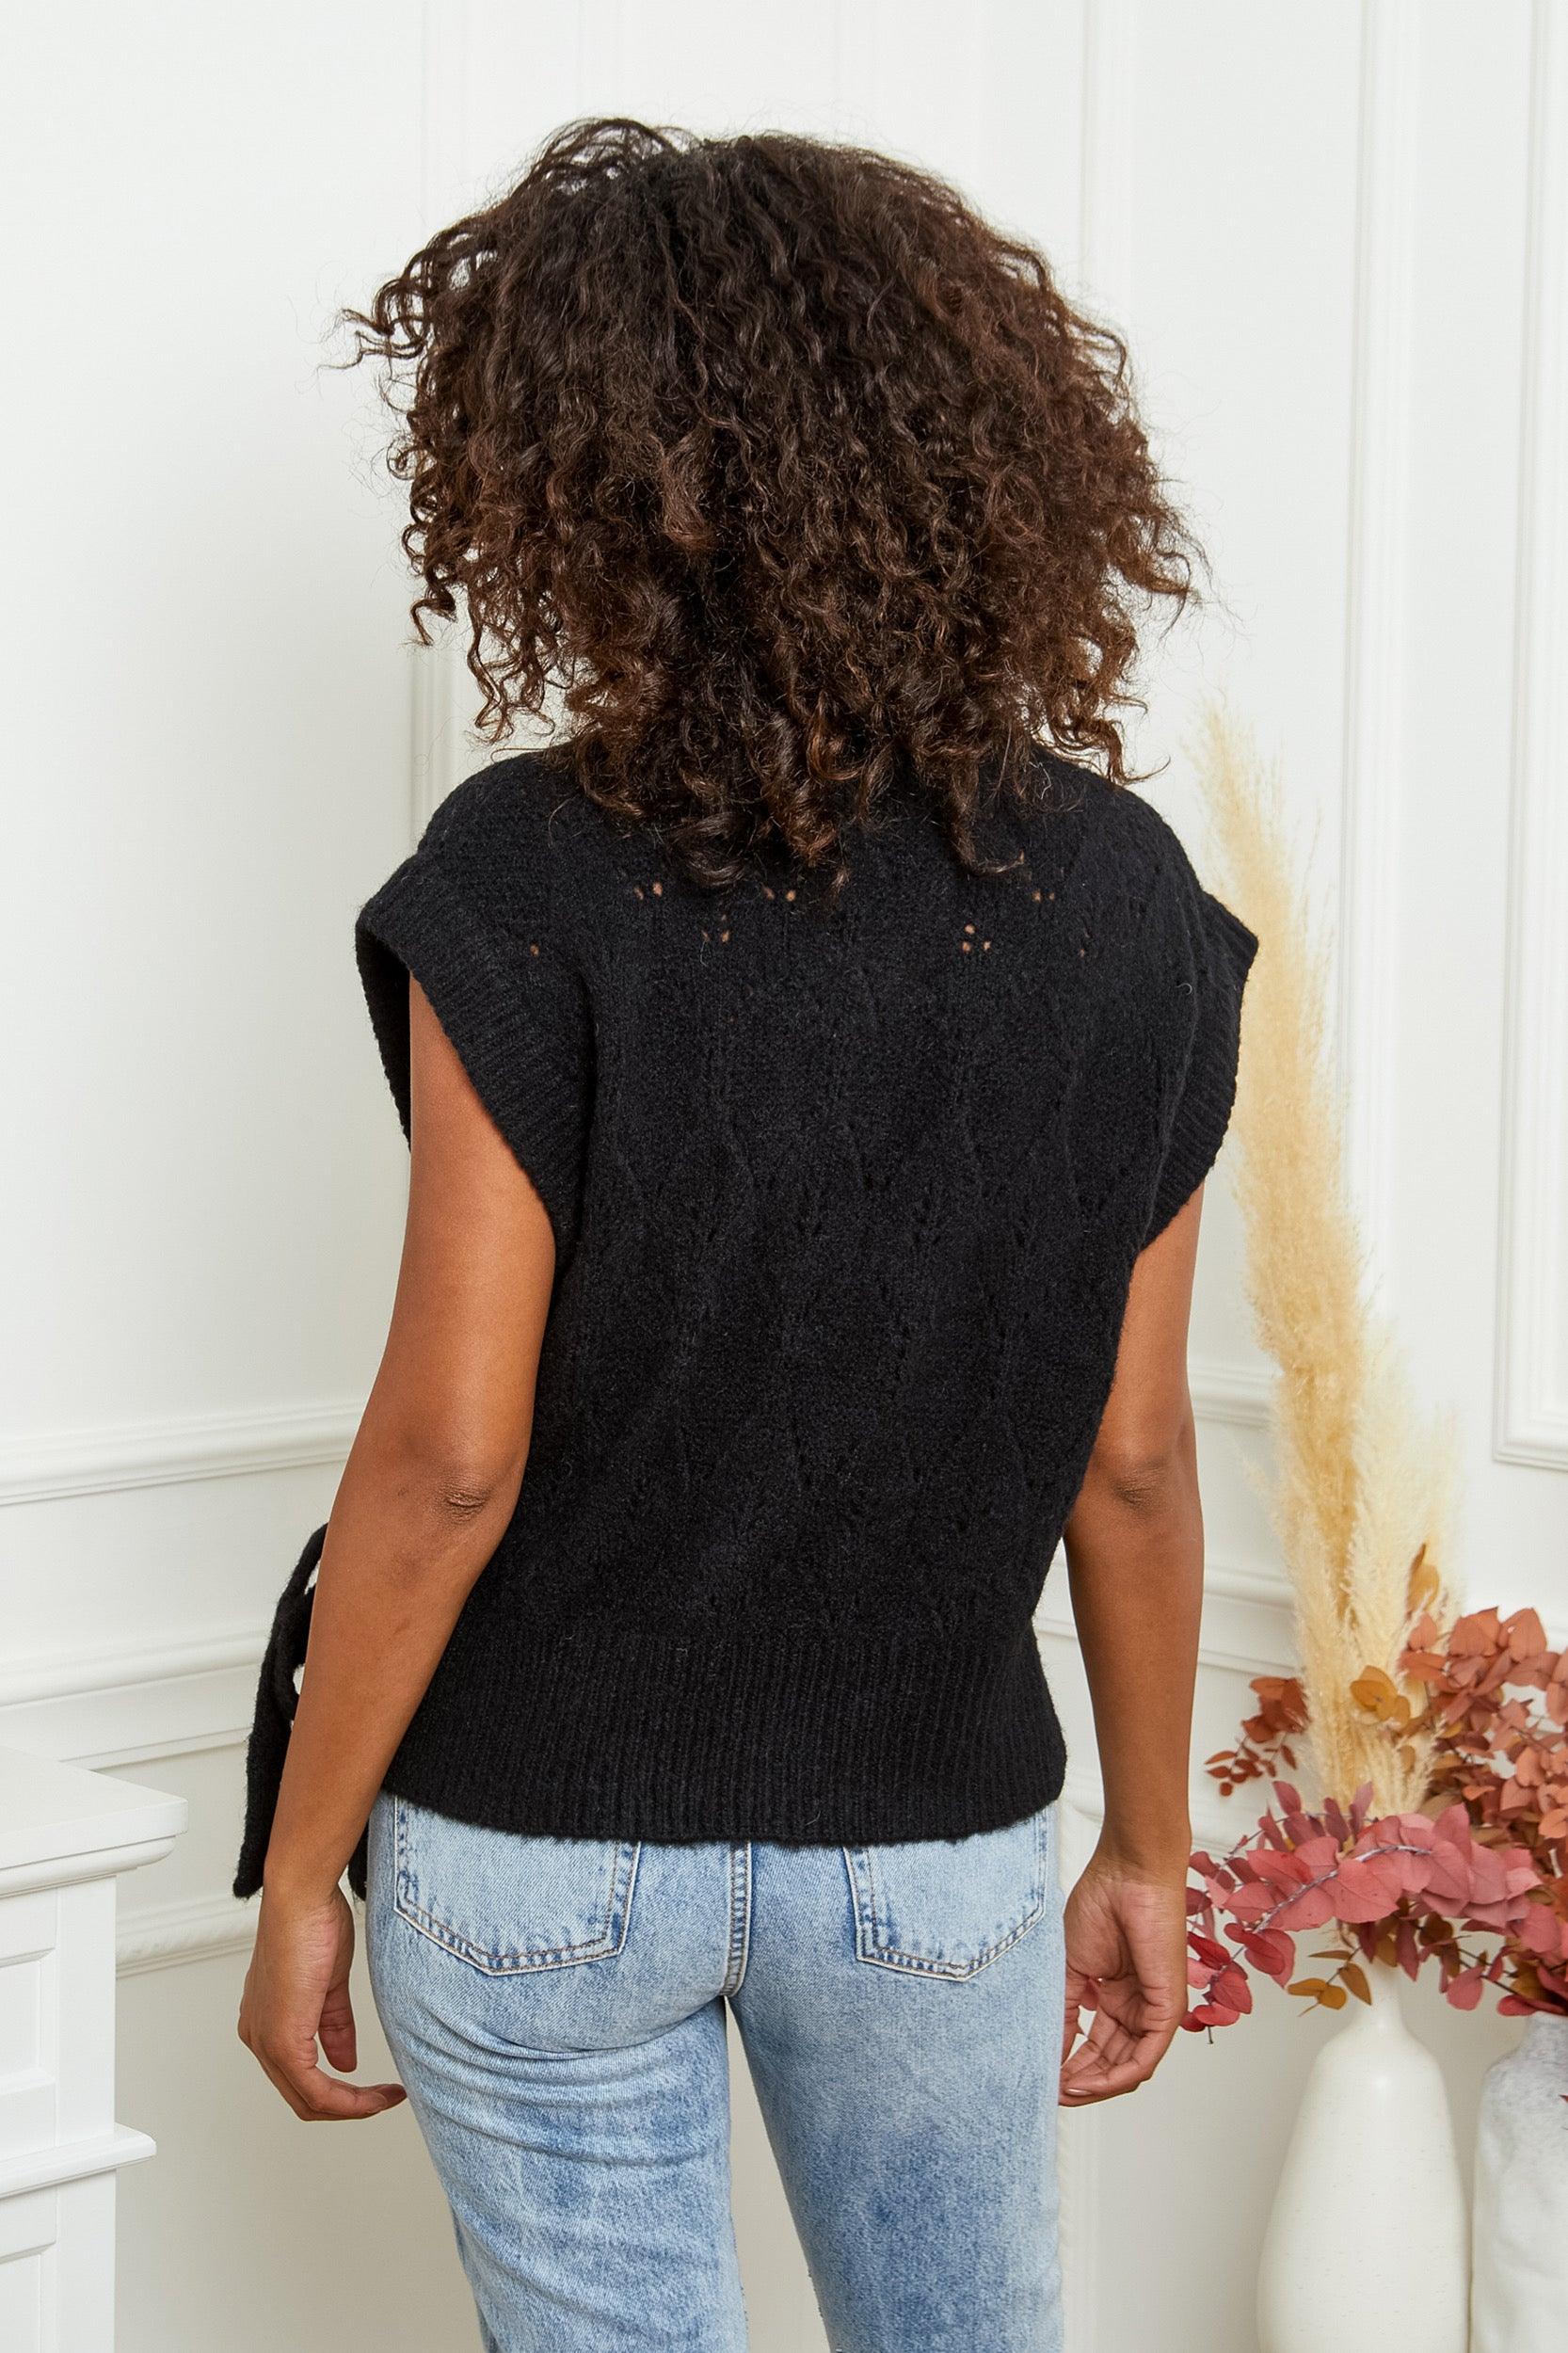 Outdazl - Emma Knit Wrap Vest in Black - OutDazl